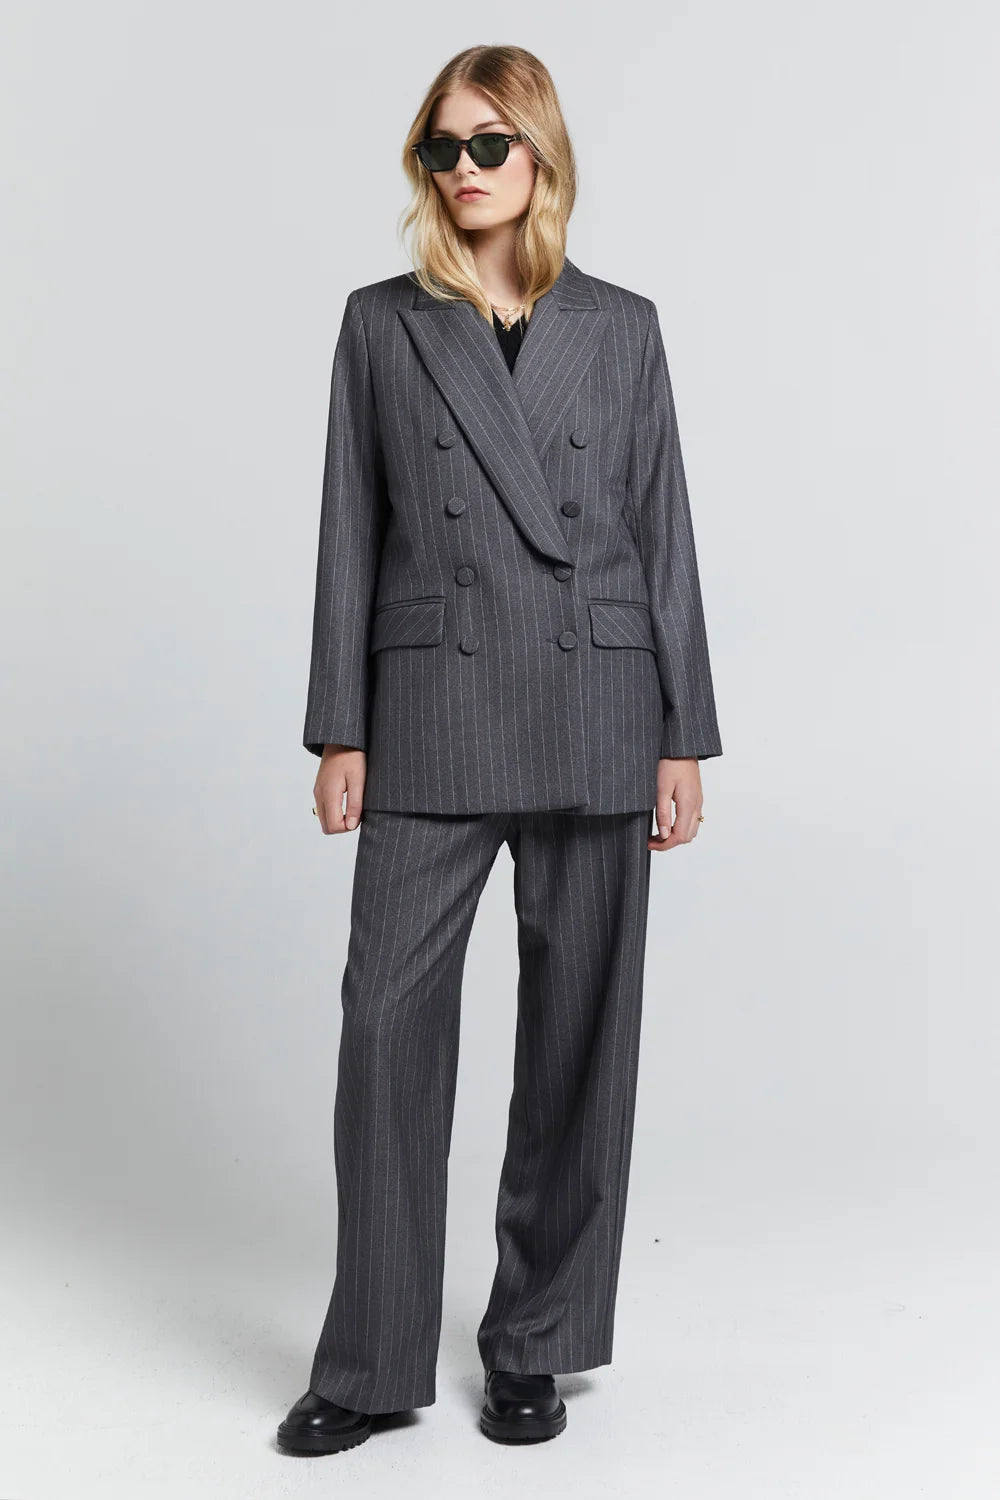 Karen Walker Workwear Trousers // Pinstripe Charcoal